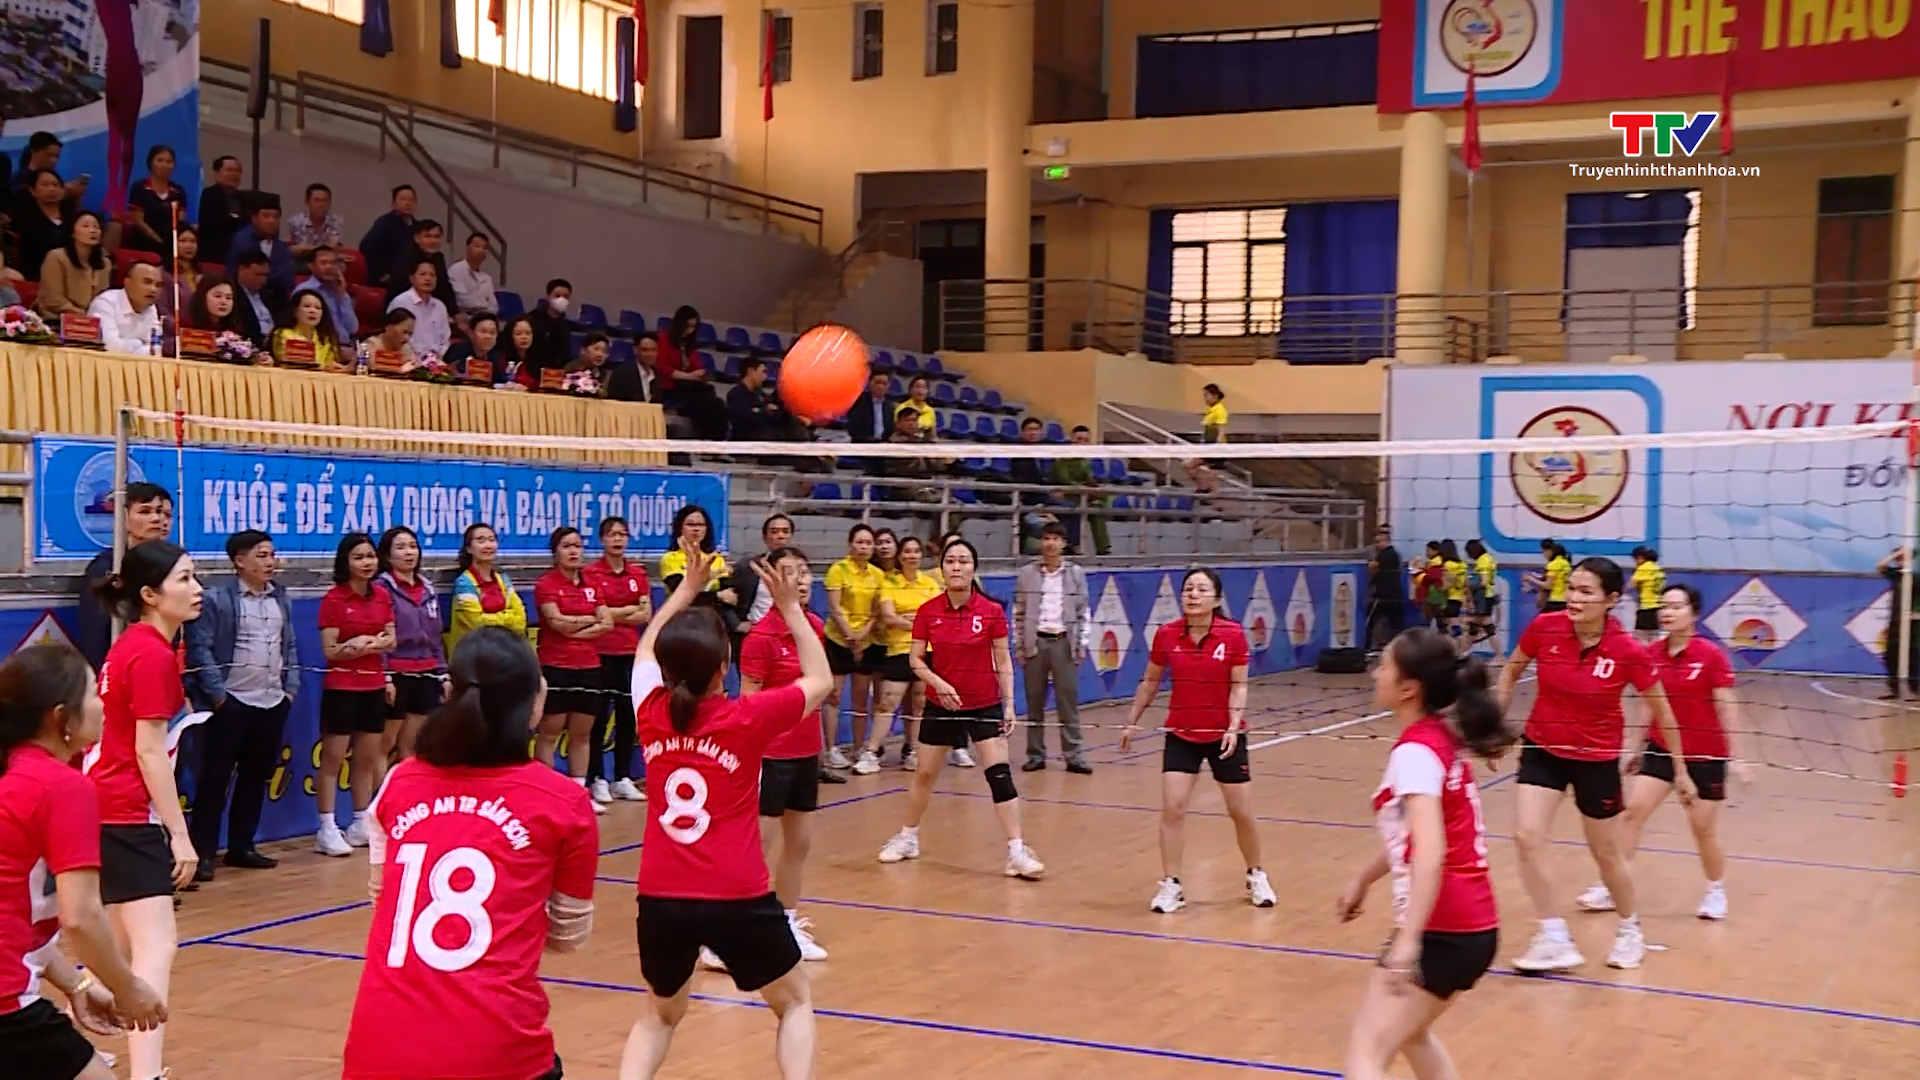 Thành phố Sầm Sơn khai mạc giải bóng chuyền hơi chào mừng kỷ niệm 114 năm Ngày Quốc tế phụ nữ 8/3- Ảnh 1.